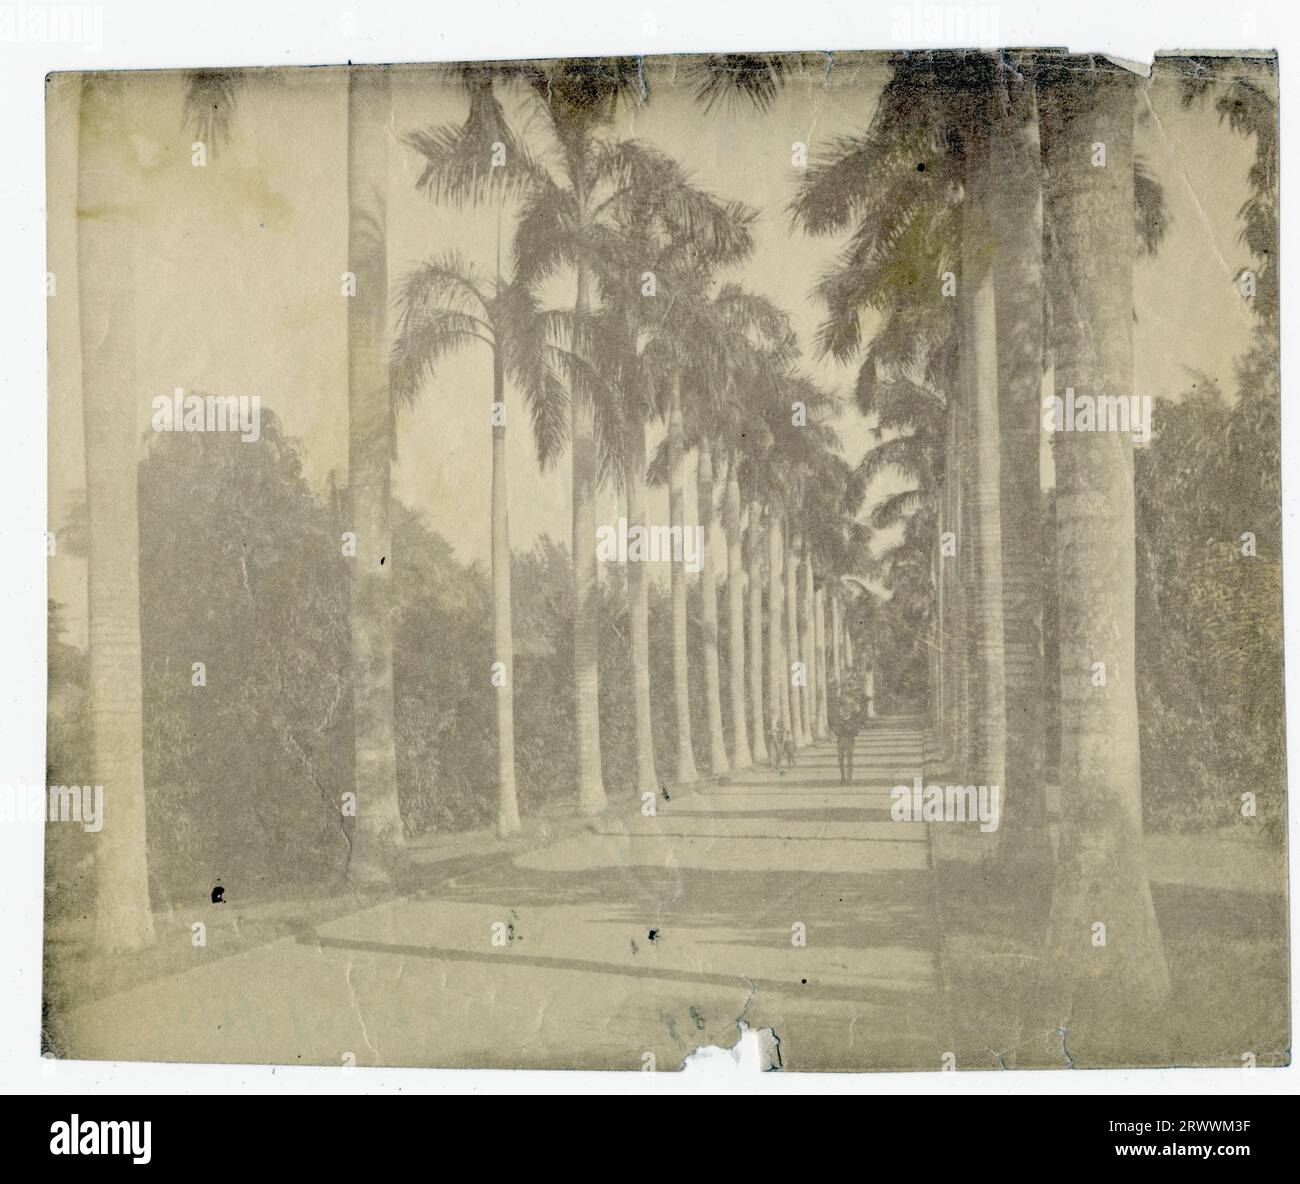 Vue d'une avenue de palmiers bordant un chemin où se promène une figure. Légende au verso : palmiers dans les jardins botaniques. Banque D'Images